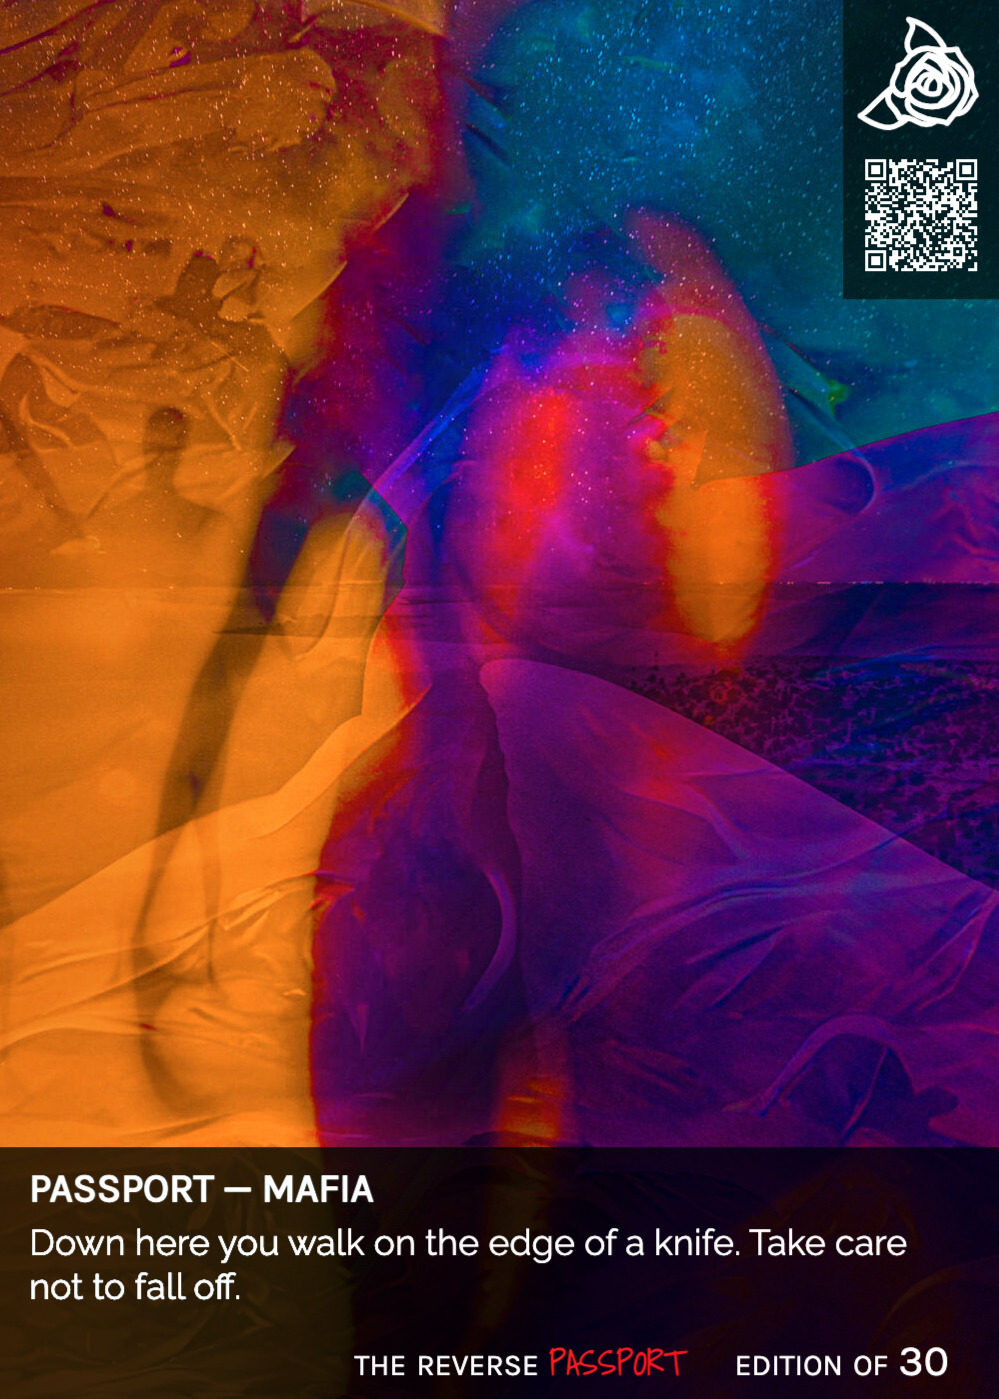 Passport — Mafia